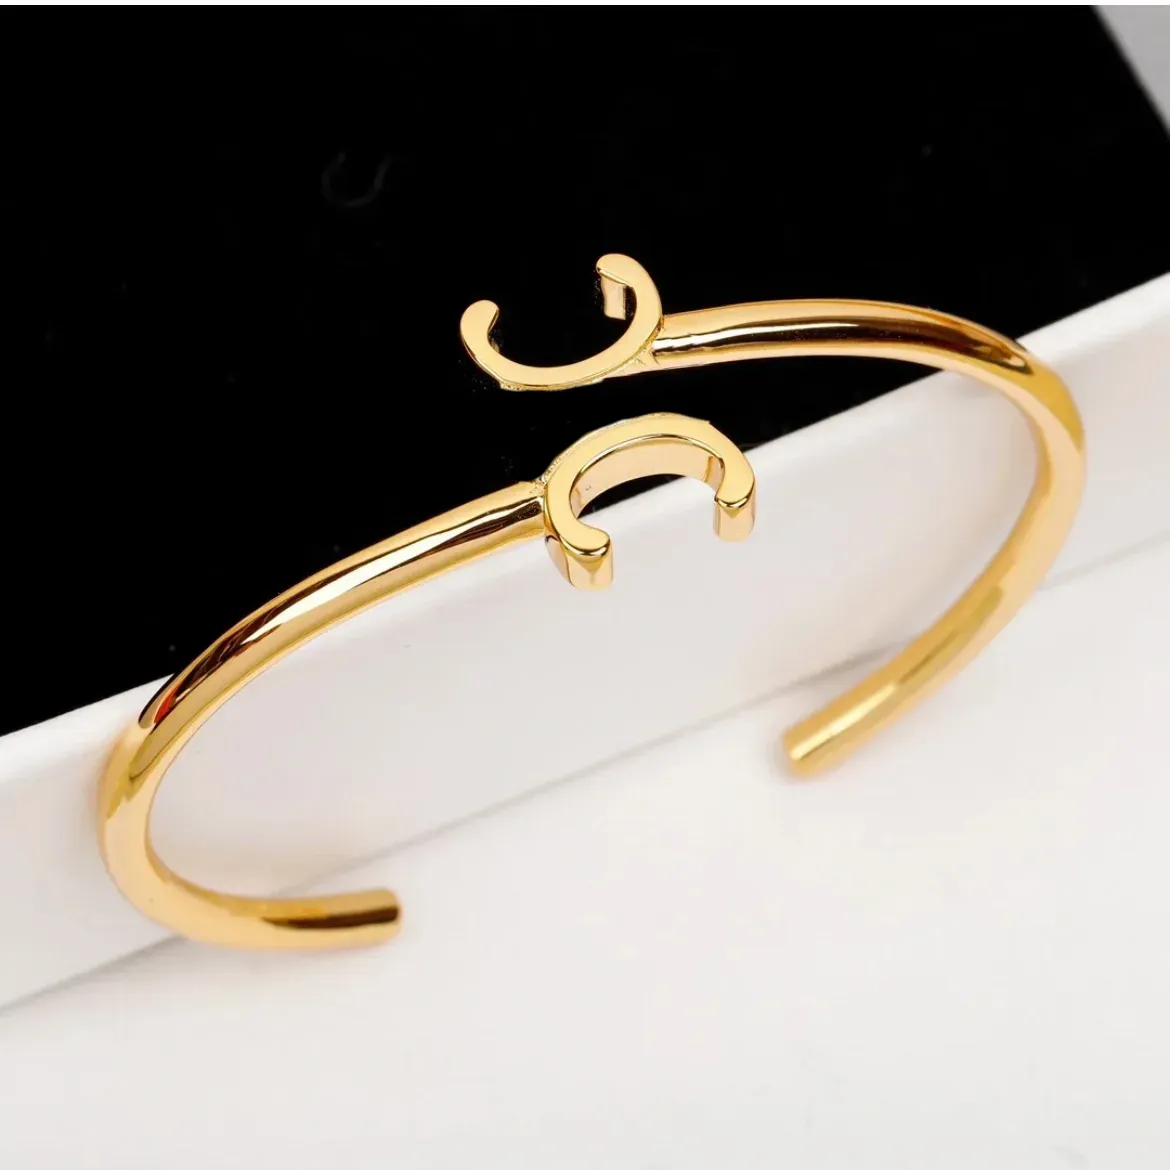 Armreifendesigner Celins Manschettenknochen Bangel Luxus Charme Armbänder Frauen Anhänger Brief Schmuck 18K Gold plattiert Kupfer Armband Manschette Fash